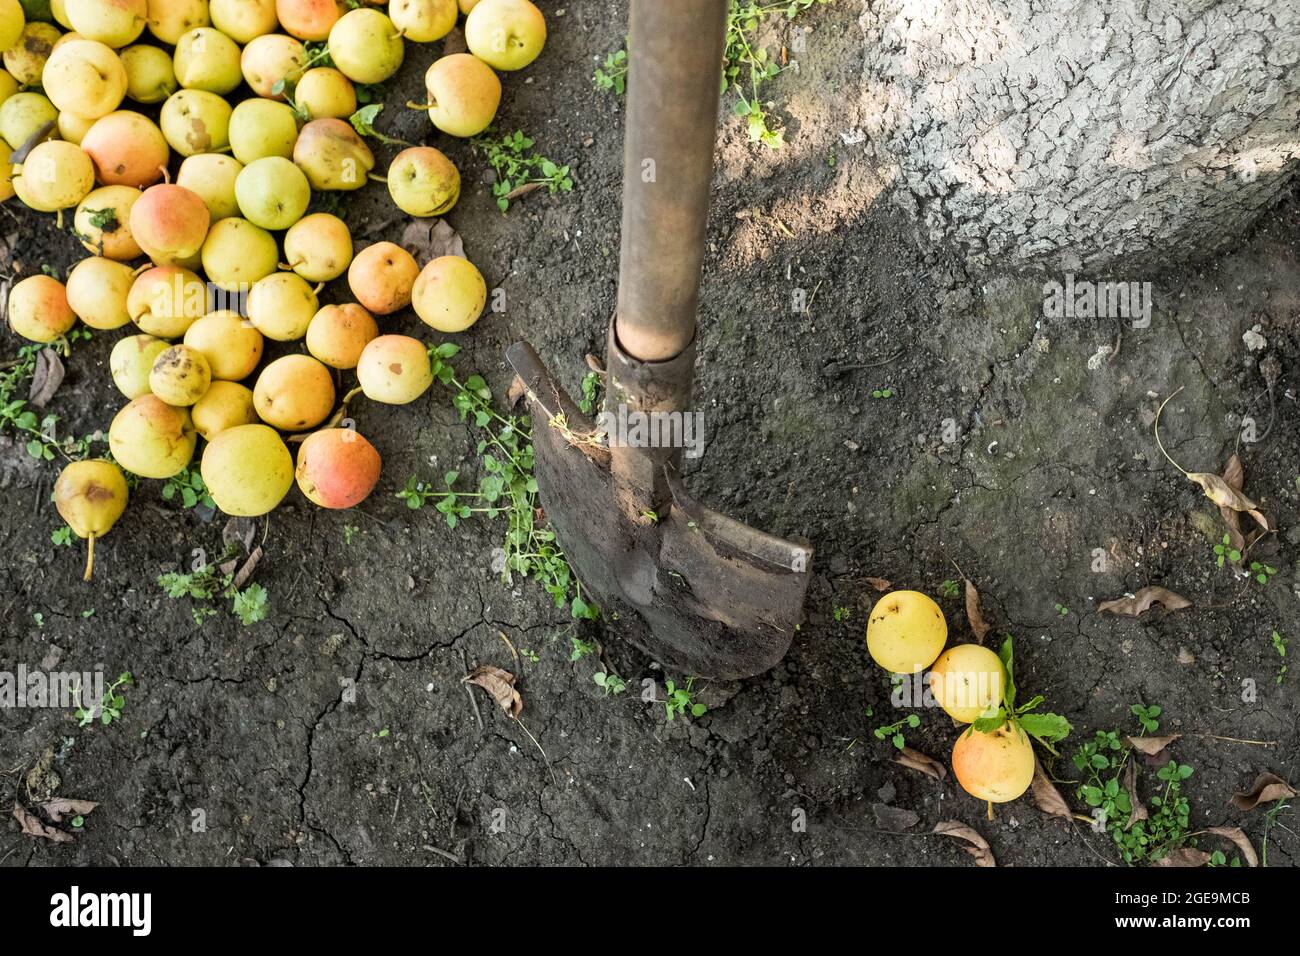 Una pala si stacca nel terreno, le mele cadute da un albero si trovano nelle vicinanze. Foto Stock